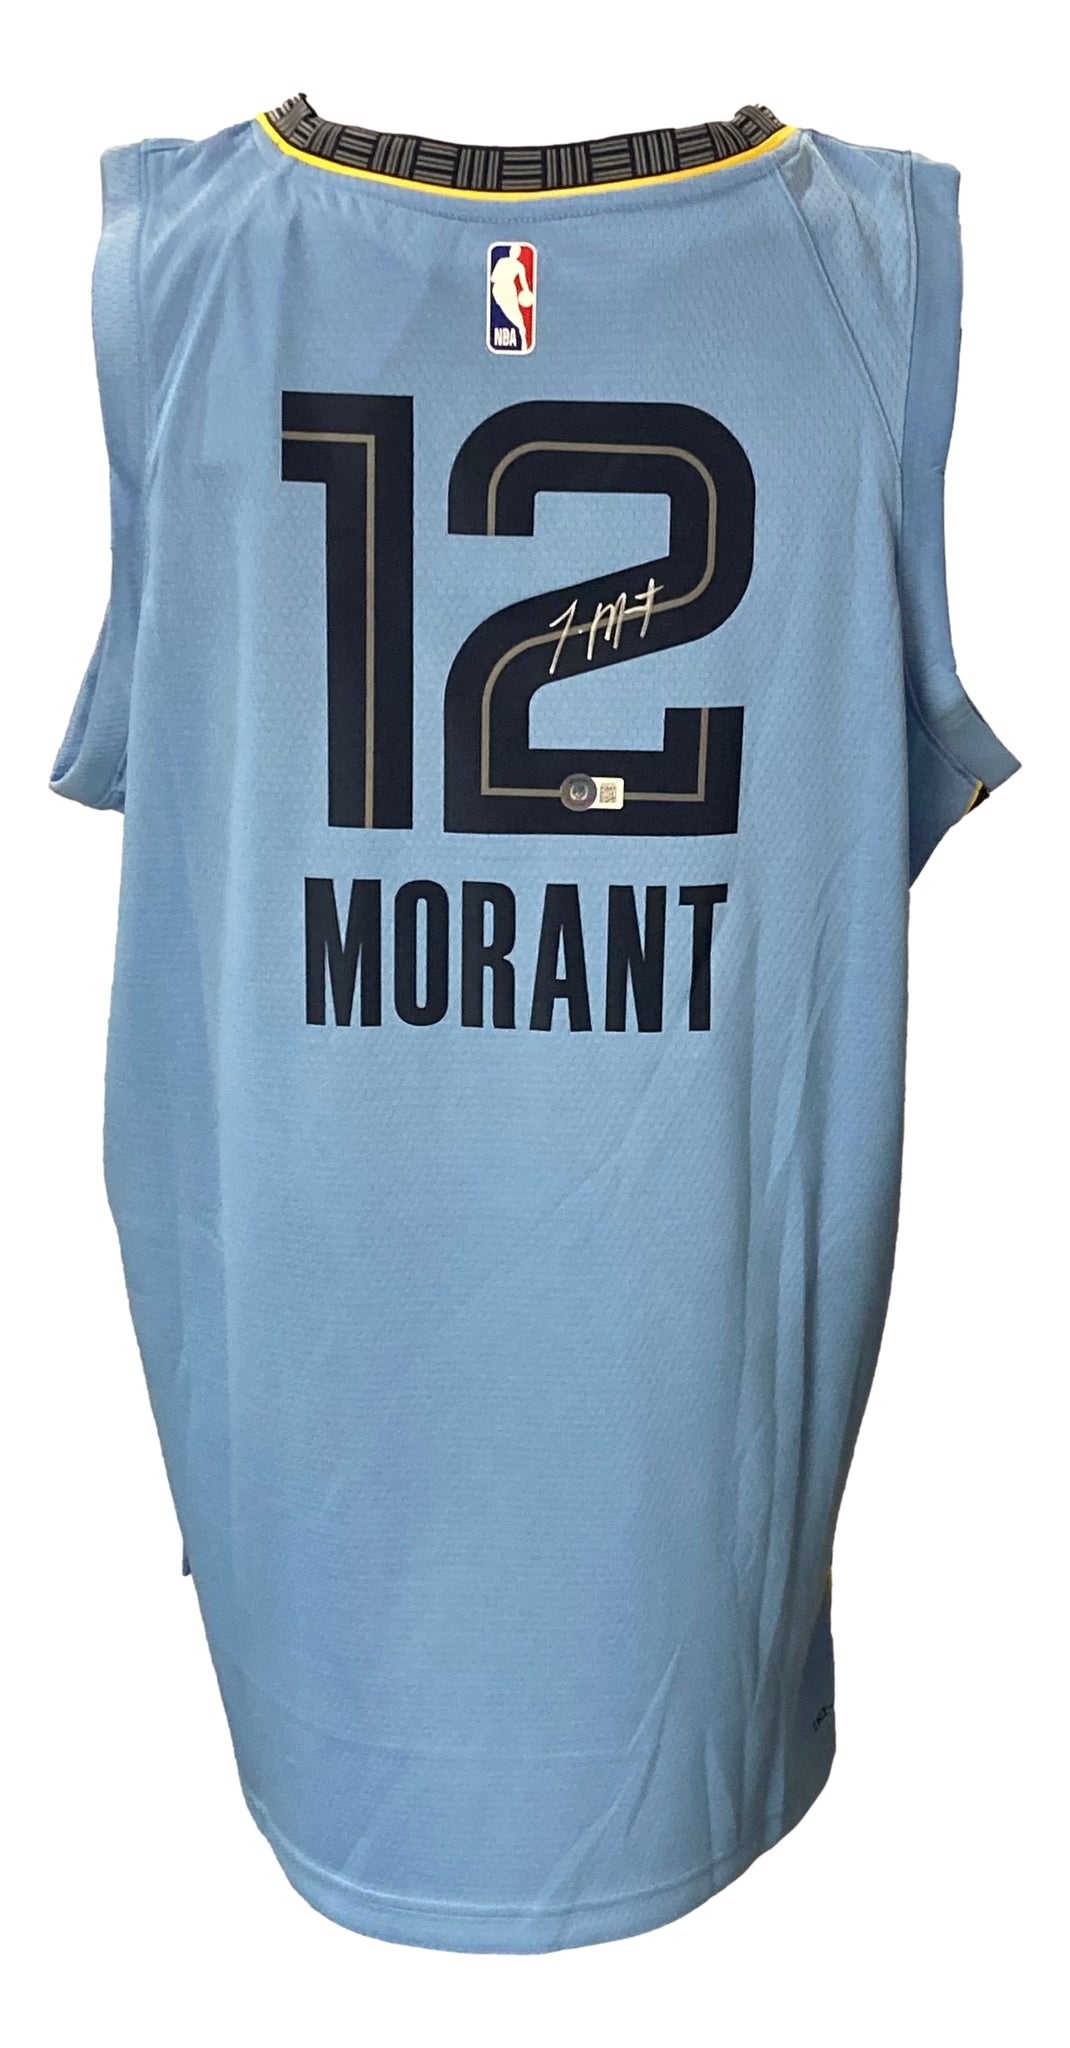 Sports Integrity Ja Morant Signed Blue Nike Memphis Grizzlies Swingman Basketball Jersey JSA